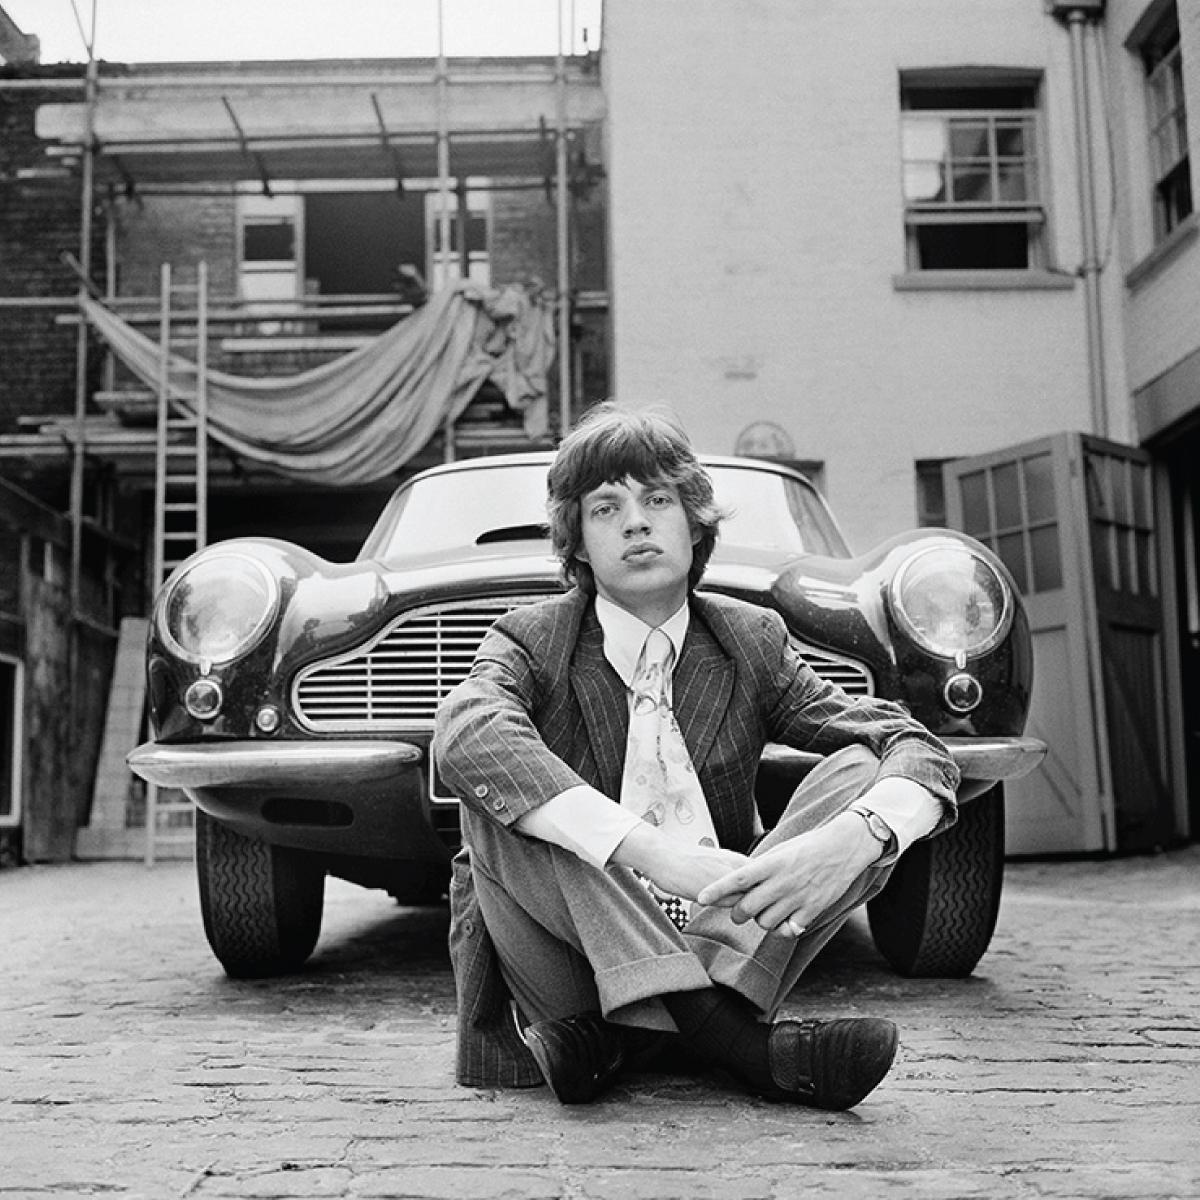 Mick Jagger von den Rolling Stones mit seinem geliebten Aston Martin DB6, aufgenommen vor seiner Londoner Wohnung im Jahr 1966 von Gered Mankowitz.

"Ich habe eine Reihe von Fotos von jedem Bandmitglied zu Hause geschossen, damit sie nicht ertragen